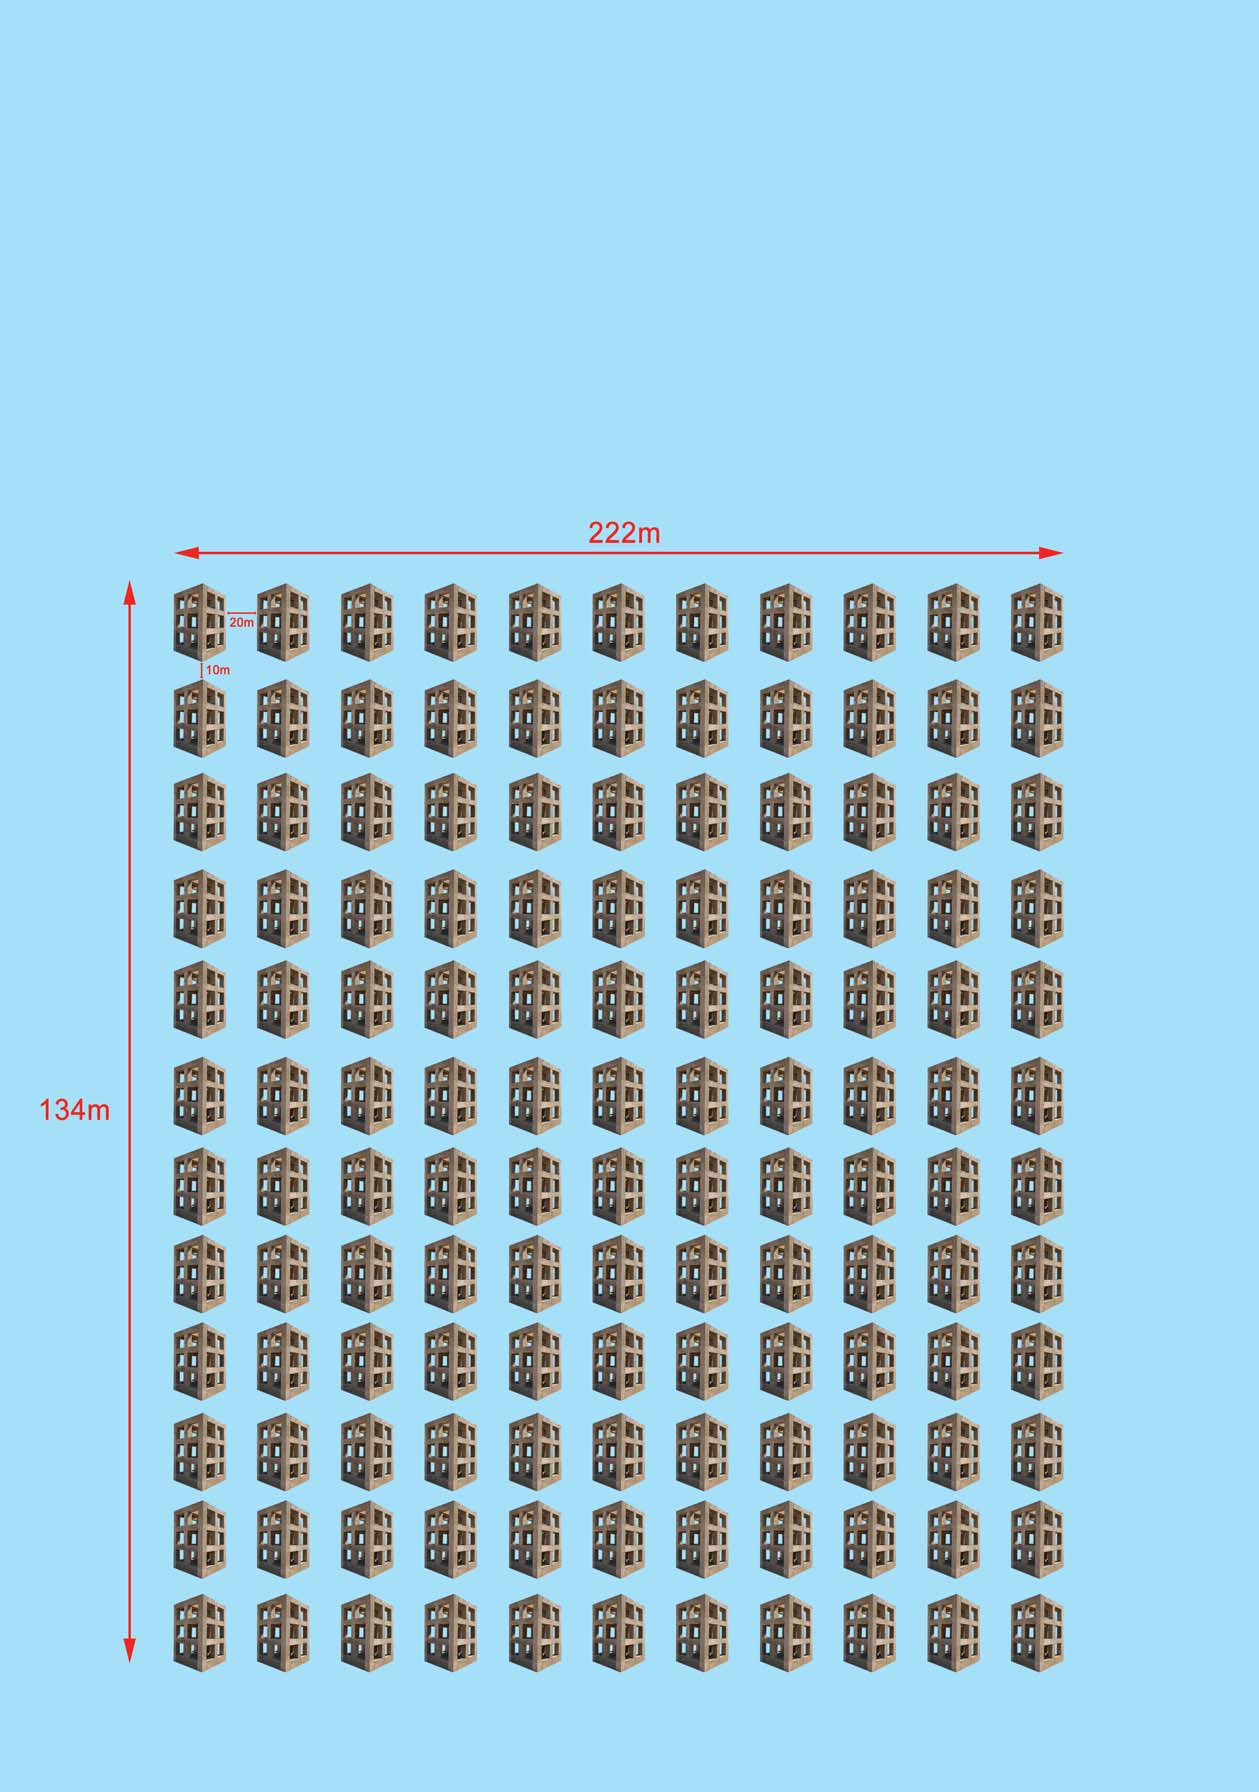 SUSUNATUR TUKUN Setiap tapak akan mengandungi 130 unit tukun yang akan disusun secara 11 lajur x 12 baris seperti yang ditunjukkan di dalam gambarajah untuk membentuk satu komplek.